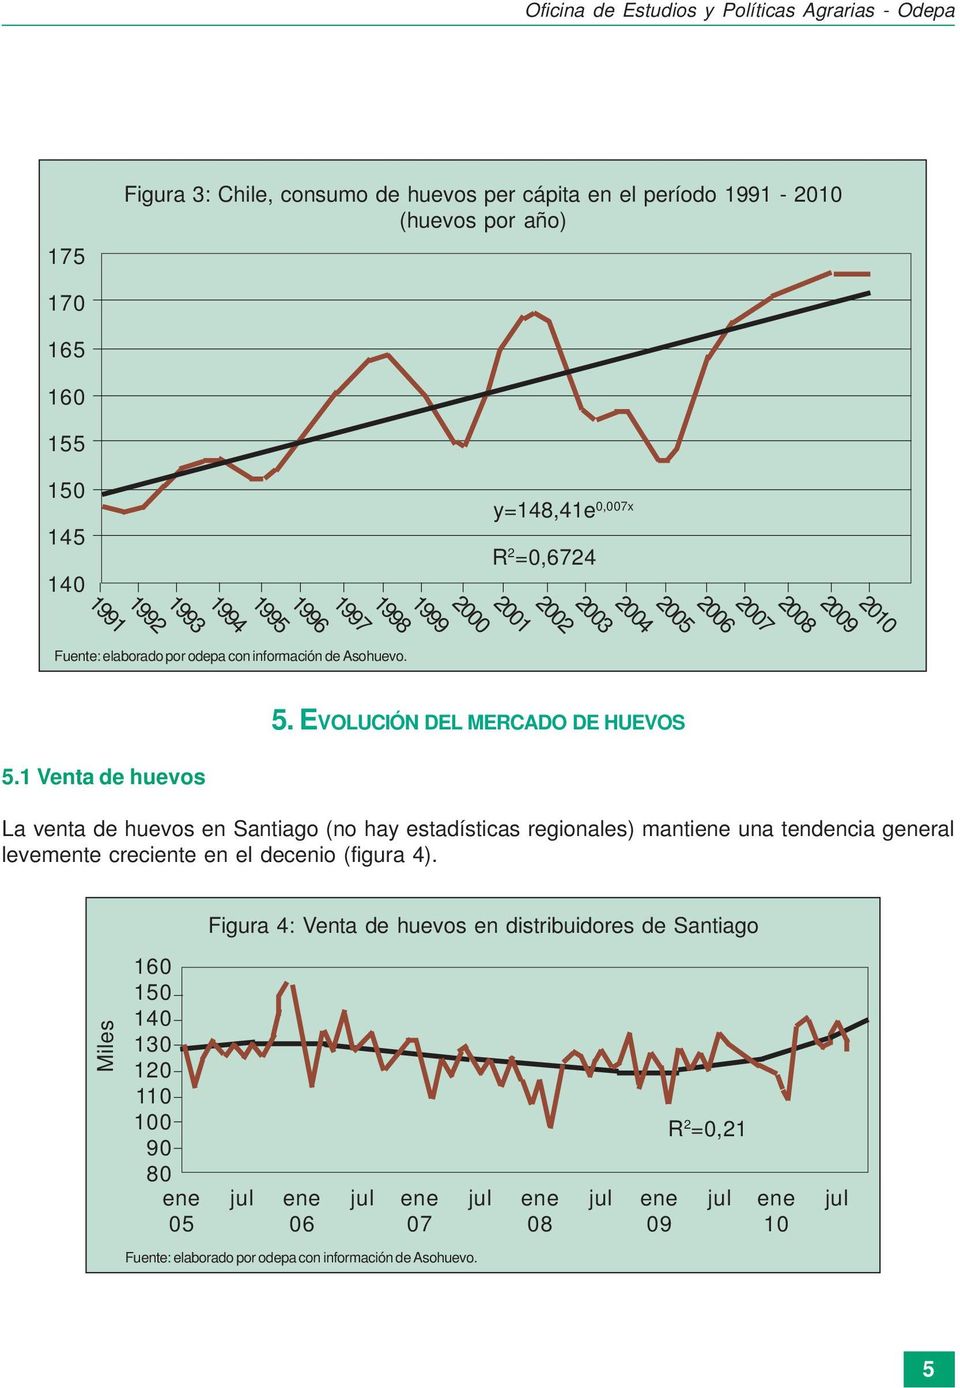 EVOLUCIÓN DEL MERCADO DE HUEVOS 5.1 Venta de huevos La venta de huevos en Santiago (no hay estadísticas regionales) mantiene una tendencia general levemente creciente en el decenio (figura 4).